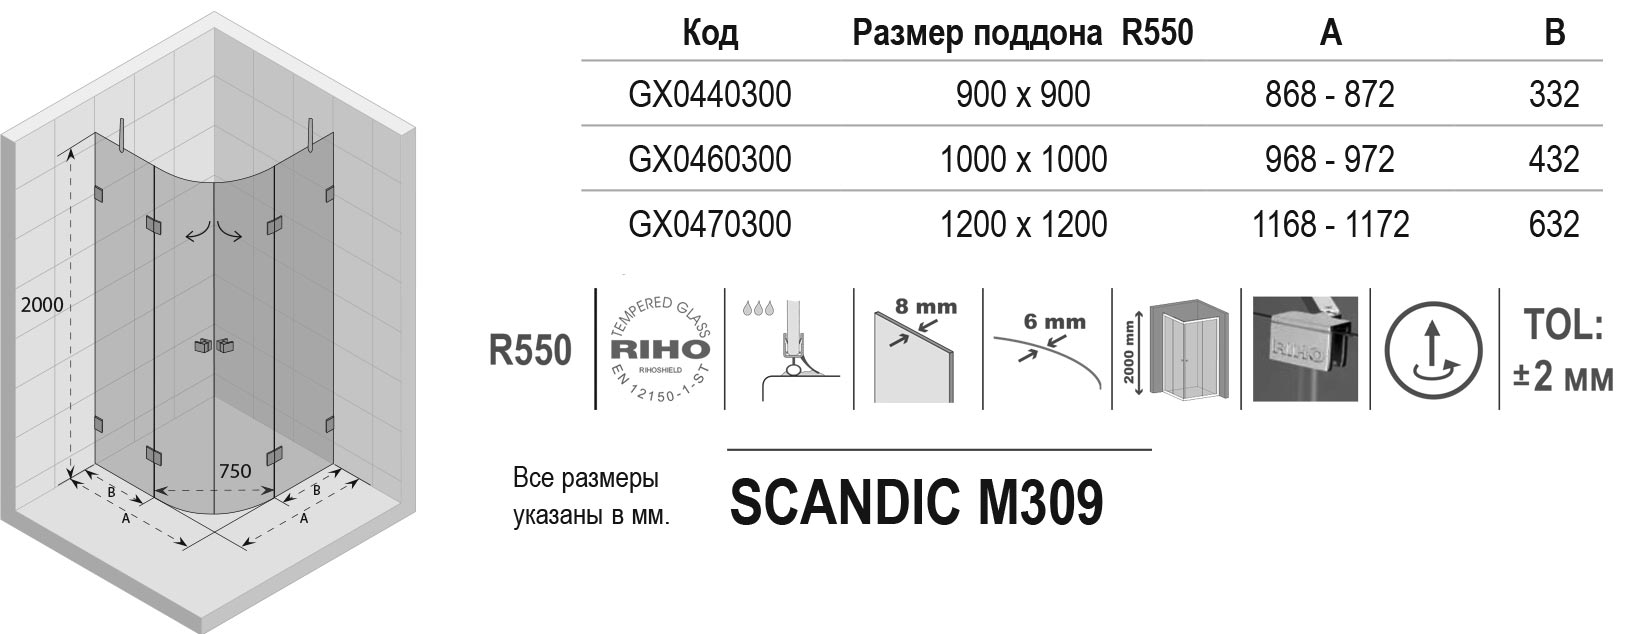 Чертёж Riho Scandic Lift Mistral M309 GX0460300